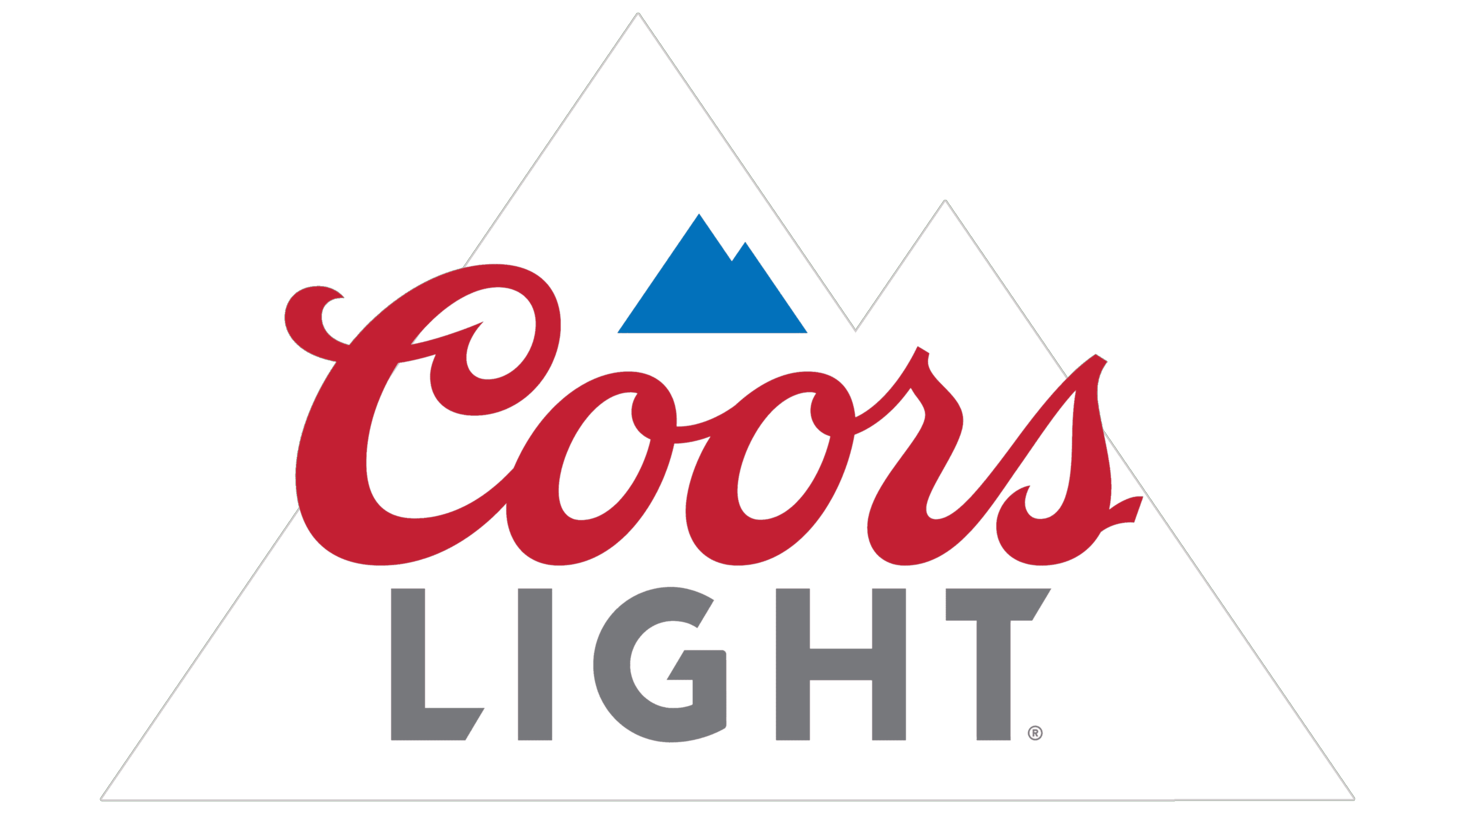 Coors light sign